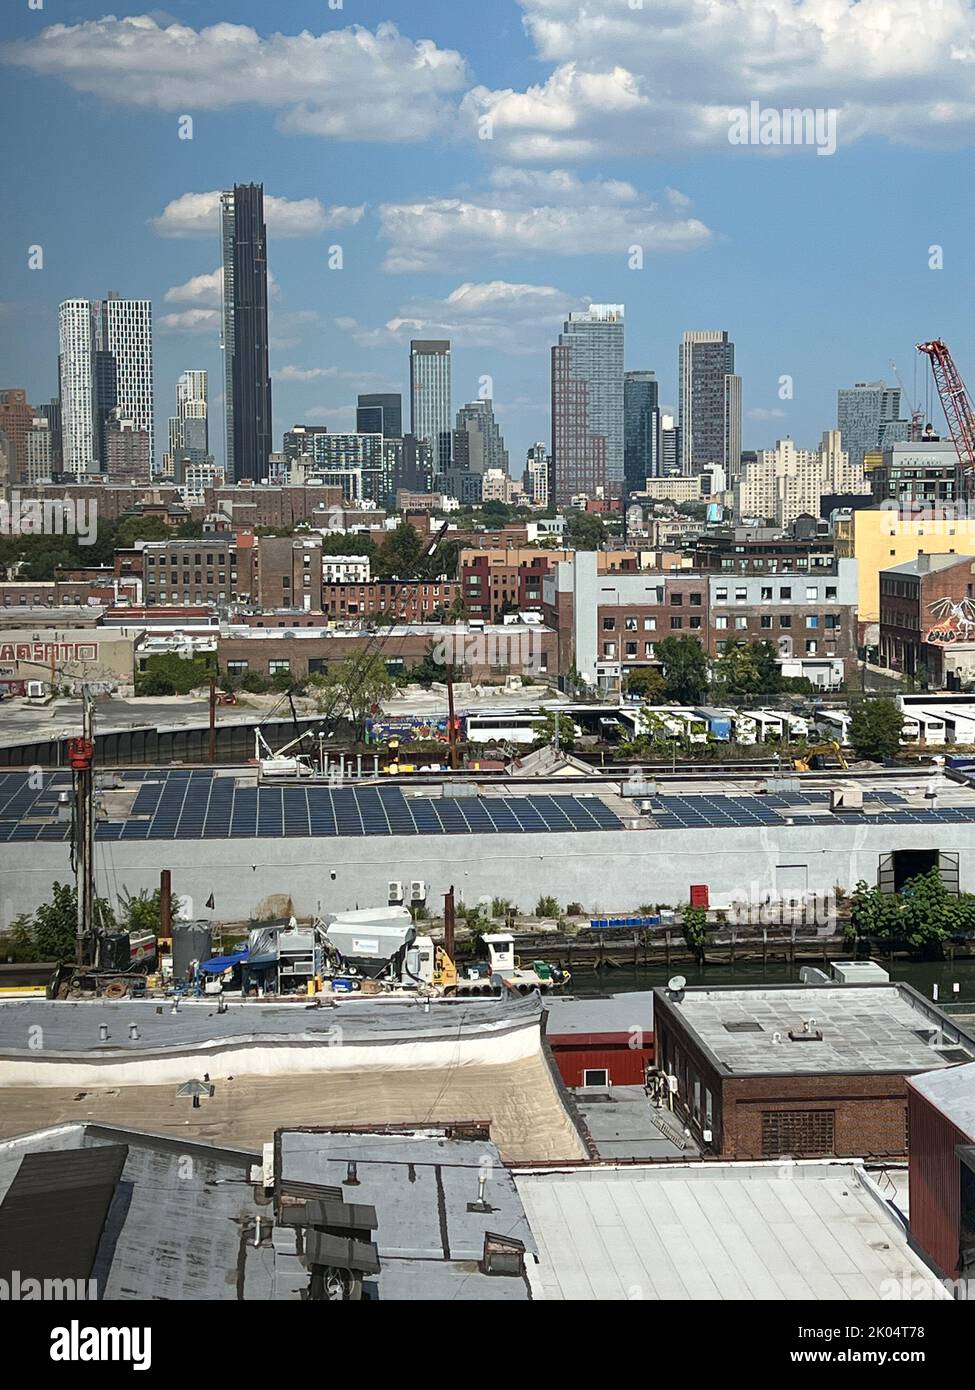 Mirando a través del distrito industrial de Gowanus con los edificios altos más nuevos en el centro de Brooklyn, Nueva York. Foto de stock